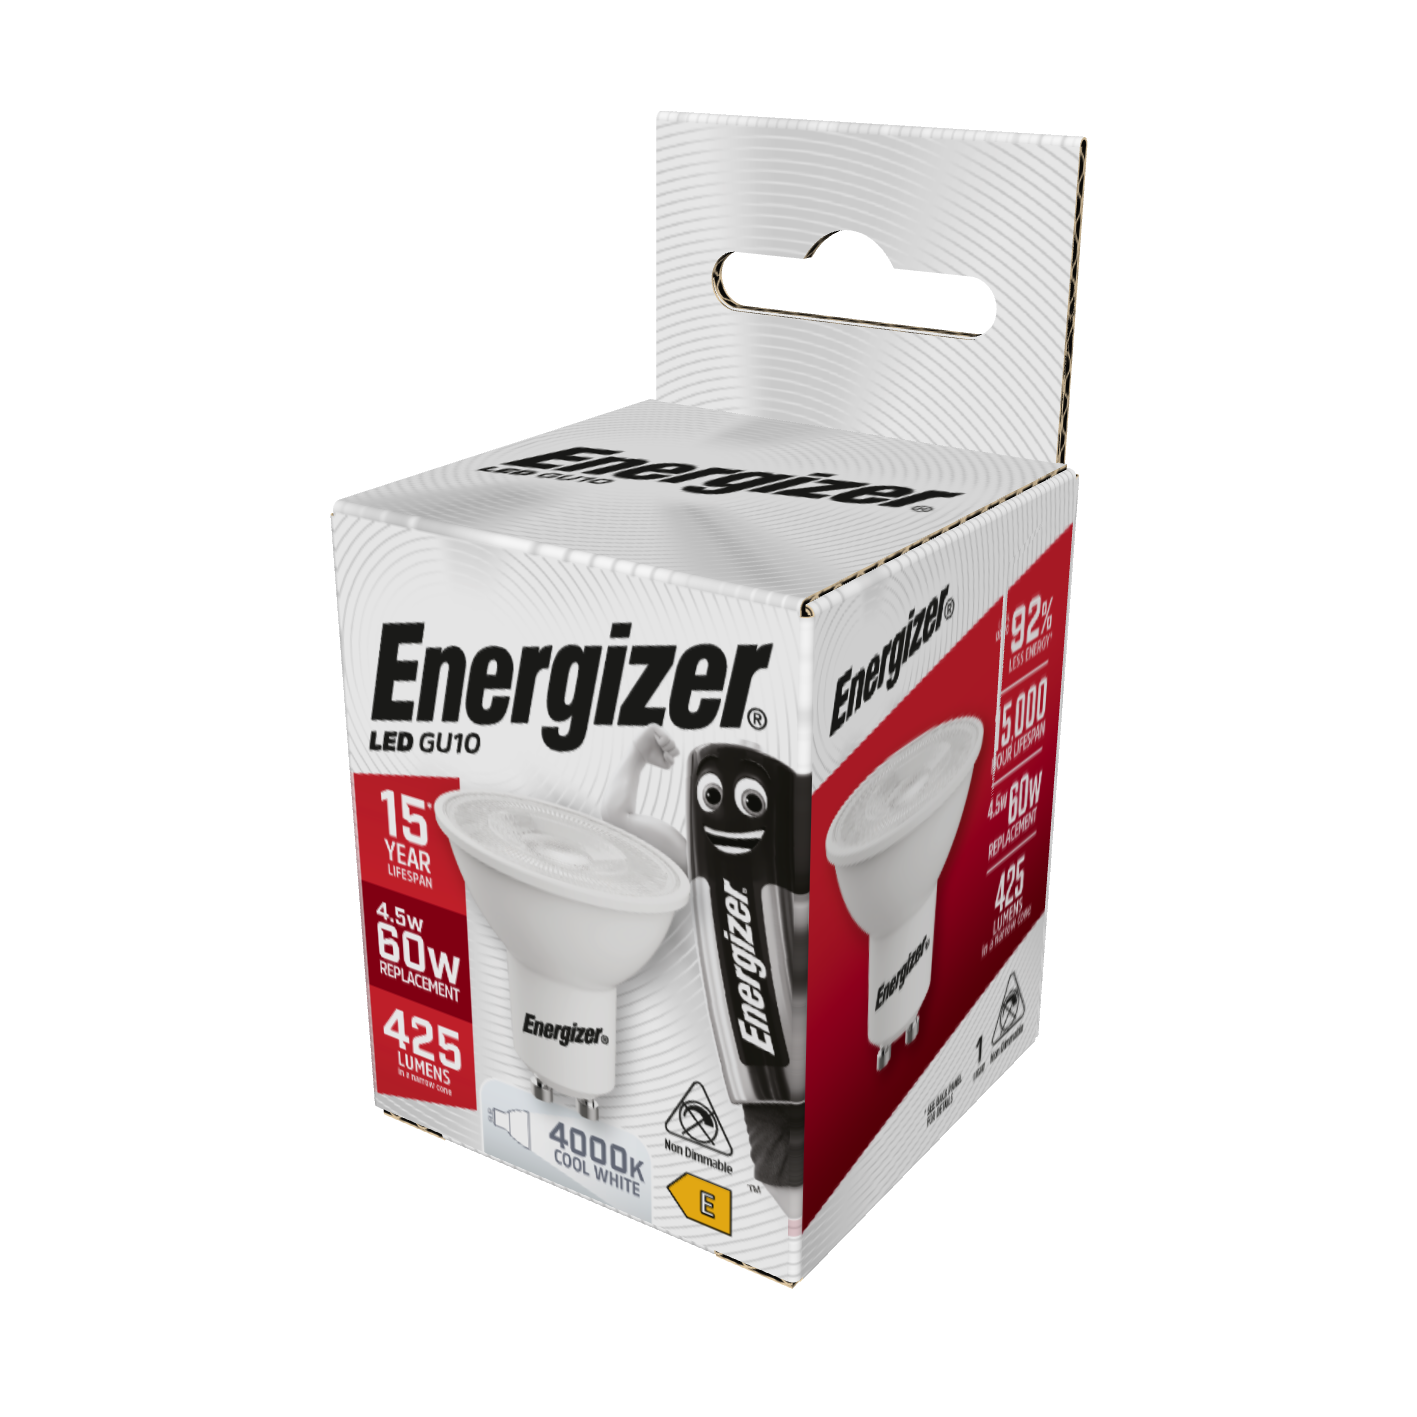 Energizer LED GU10 425lm 4,5W 4.000K (Blanco Frío), Caja de 1